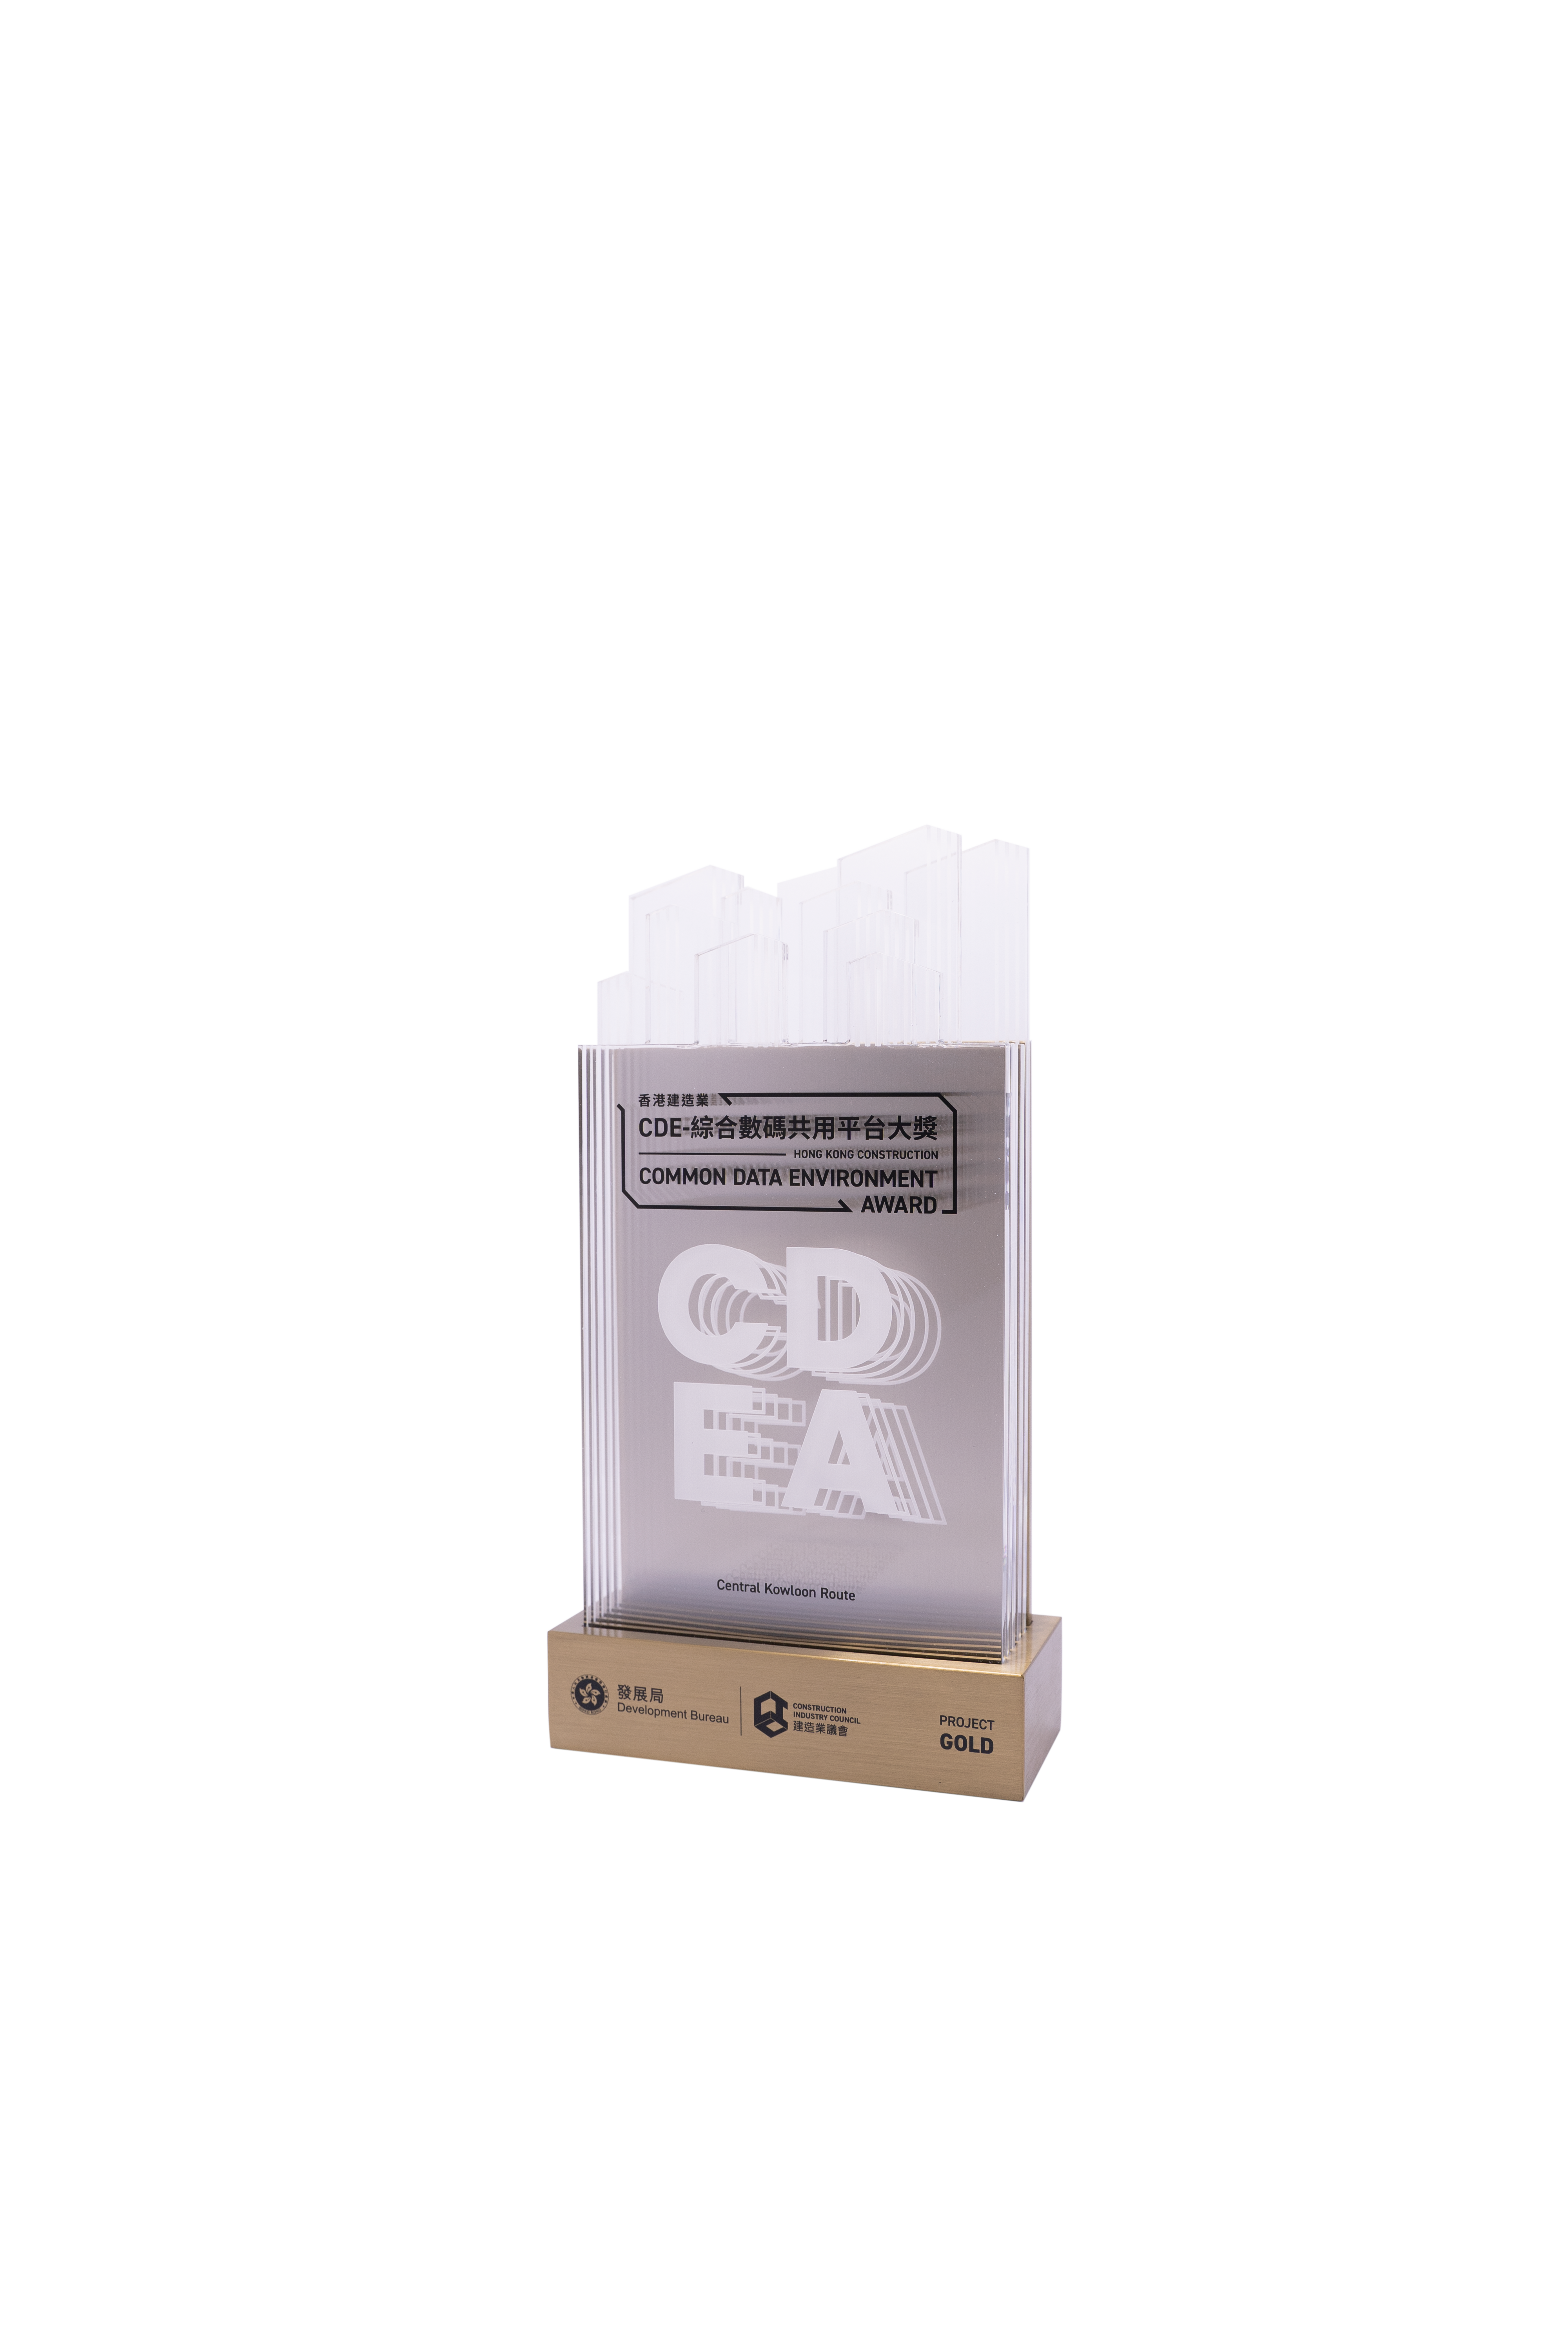 香港建造業CDE-綜合數碼共用平台大獎  (項目類別) 金獎